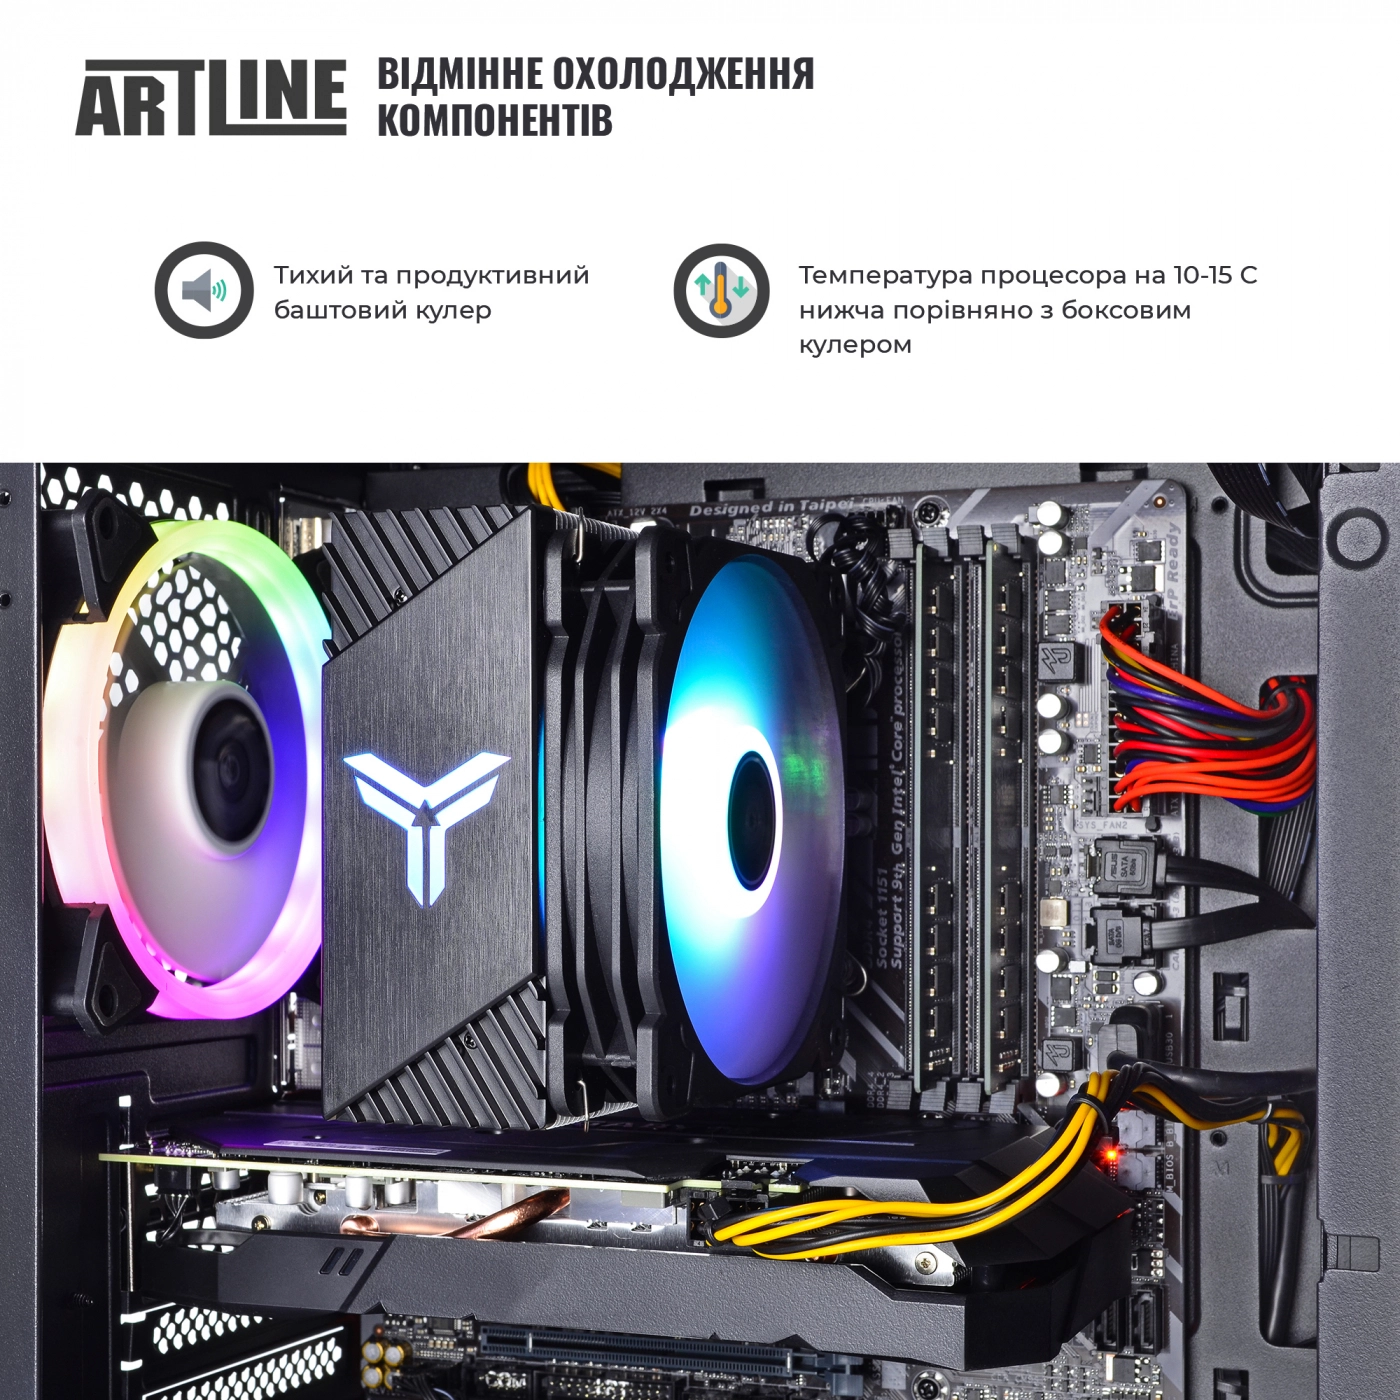 Купить Компьютер ARTLINE Gaming X71v61 - фото 4